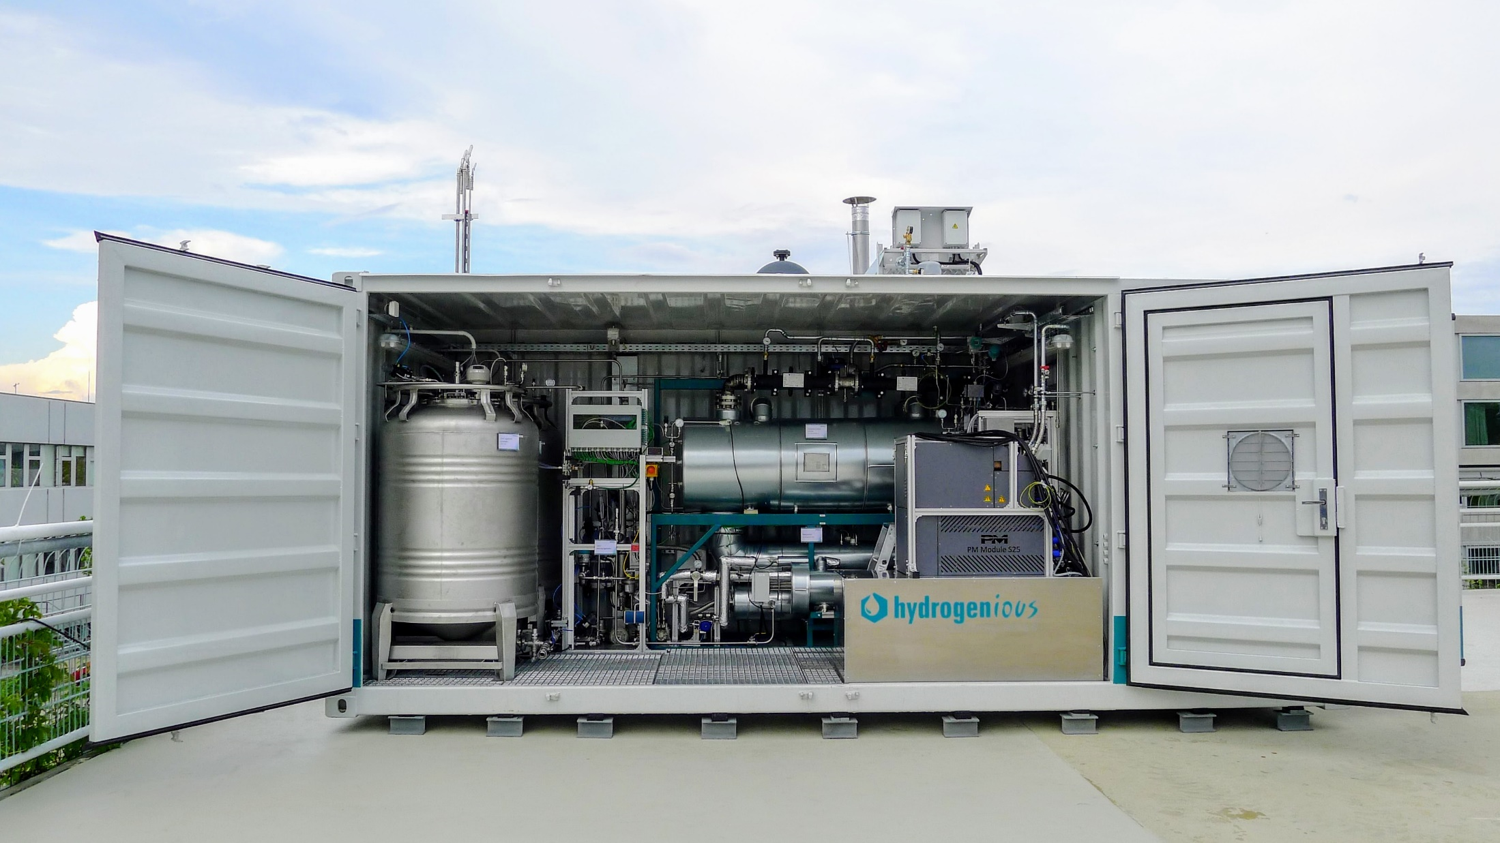 Bild 1 zeigt eine ReleaseBOX von Hydrogenious, welche sich in Stuttgart im Einsatz befindet und hier eine Stromtankstelle mit Strom versorgt